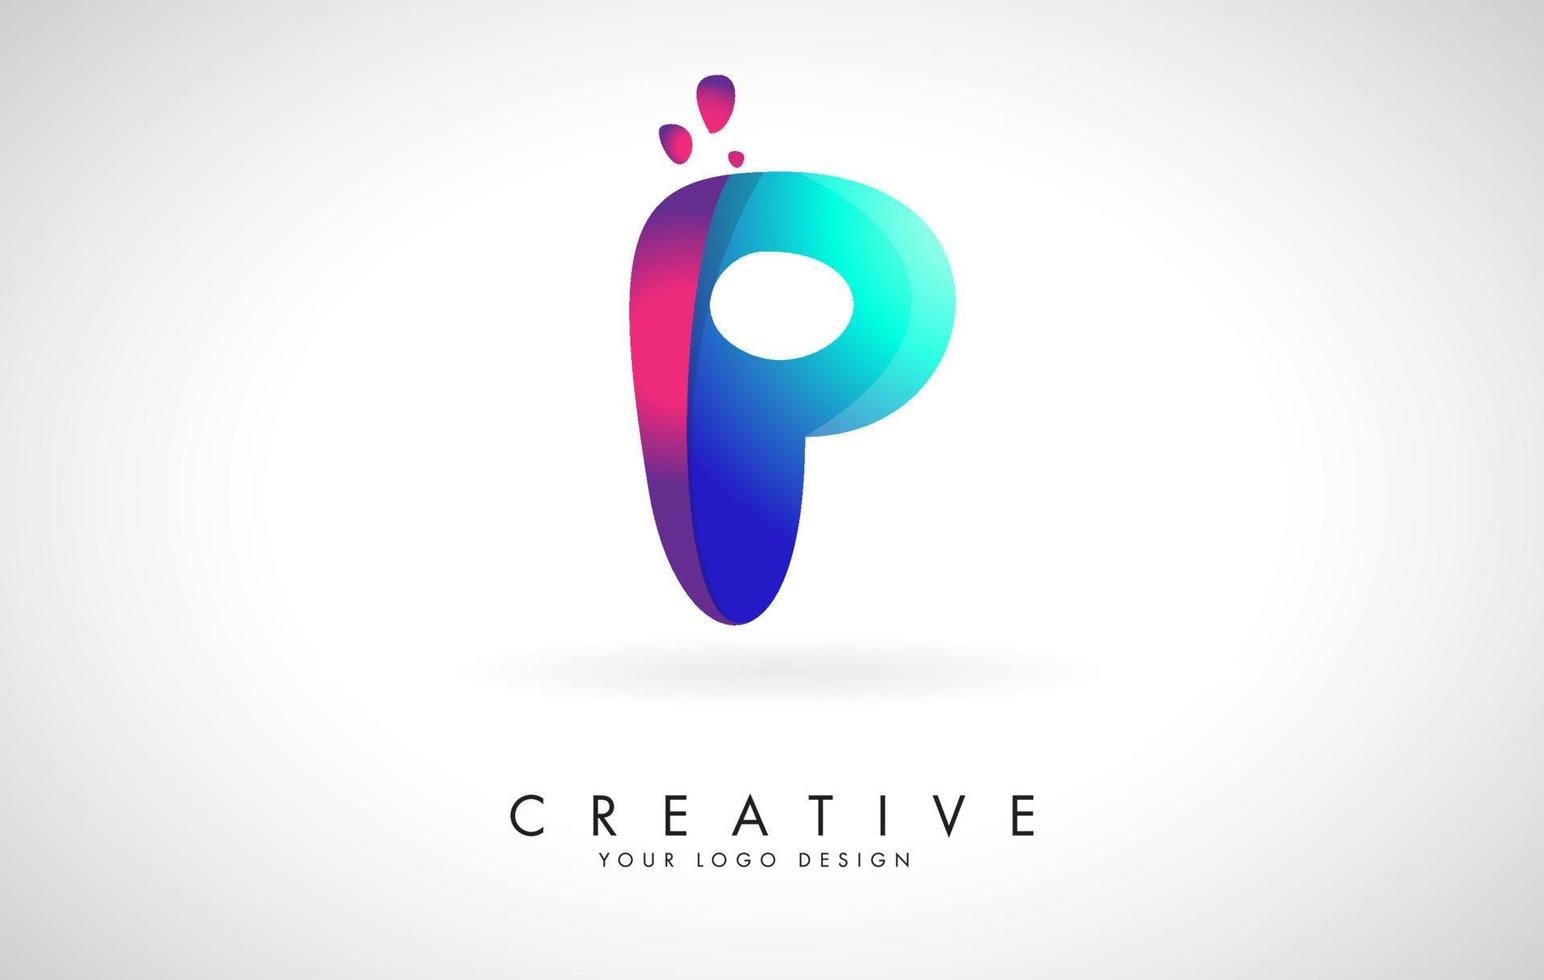 design de logotipo p criativo azul e rosa com pontos. entretenimento corporativo amigável, mídia, tecnologia, design de vetor de negócios digitais com gotas.